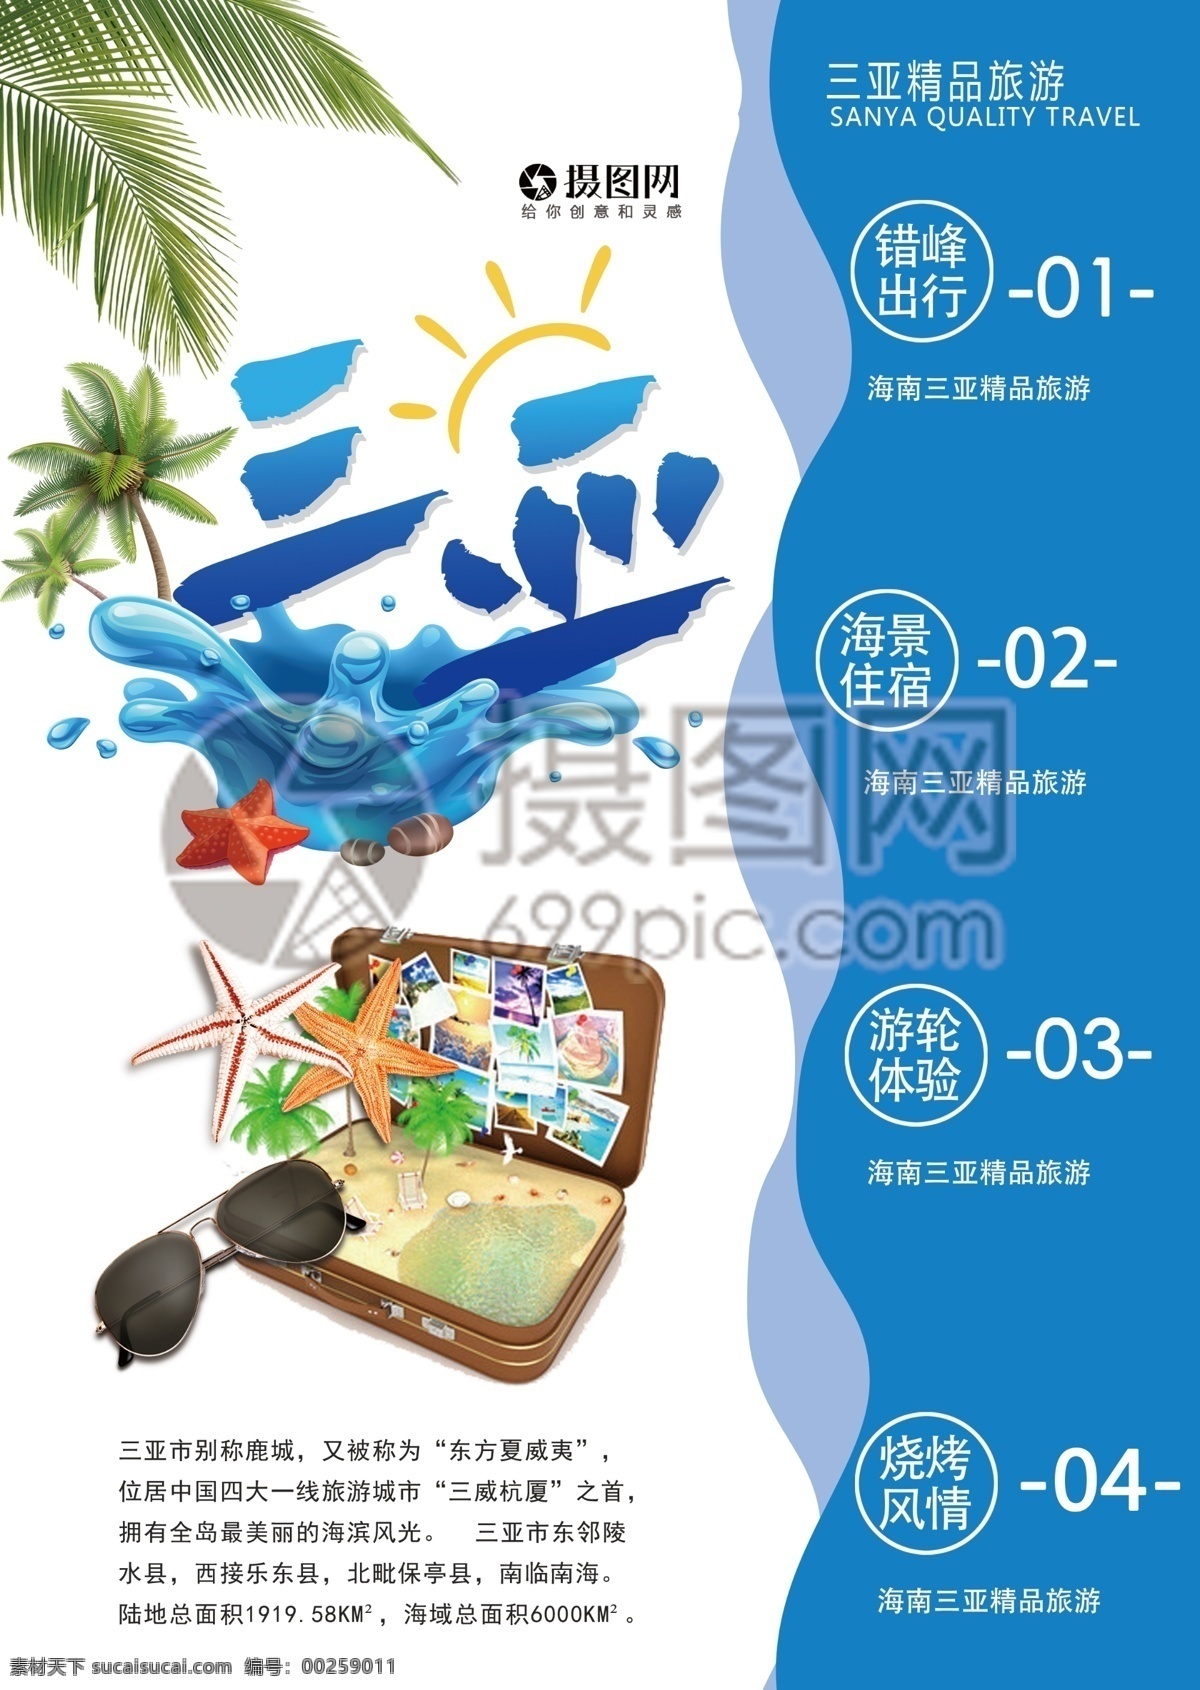 三亚旅游 宣传单 海南 三亚 蓝色 海边 旅游 度假 旅游宣传 宣传单设计 假期 游玩